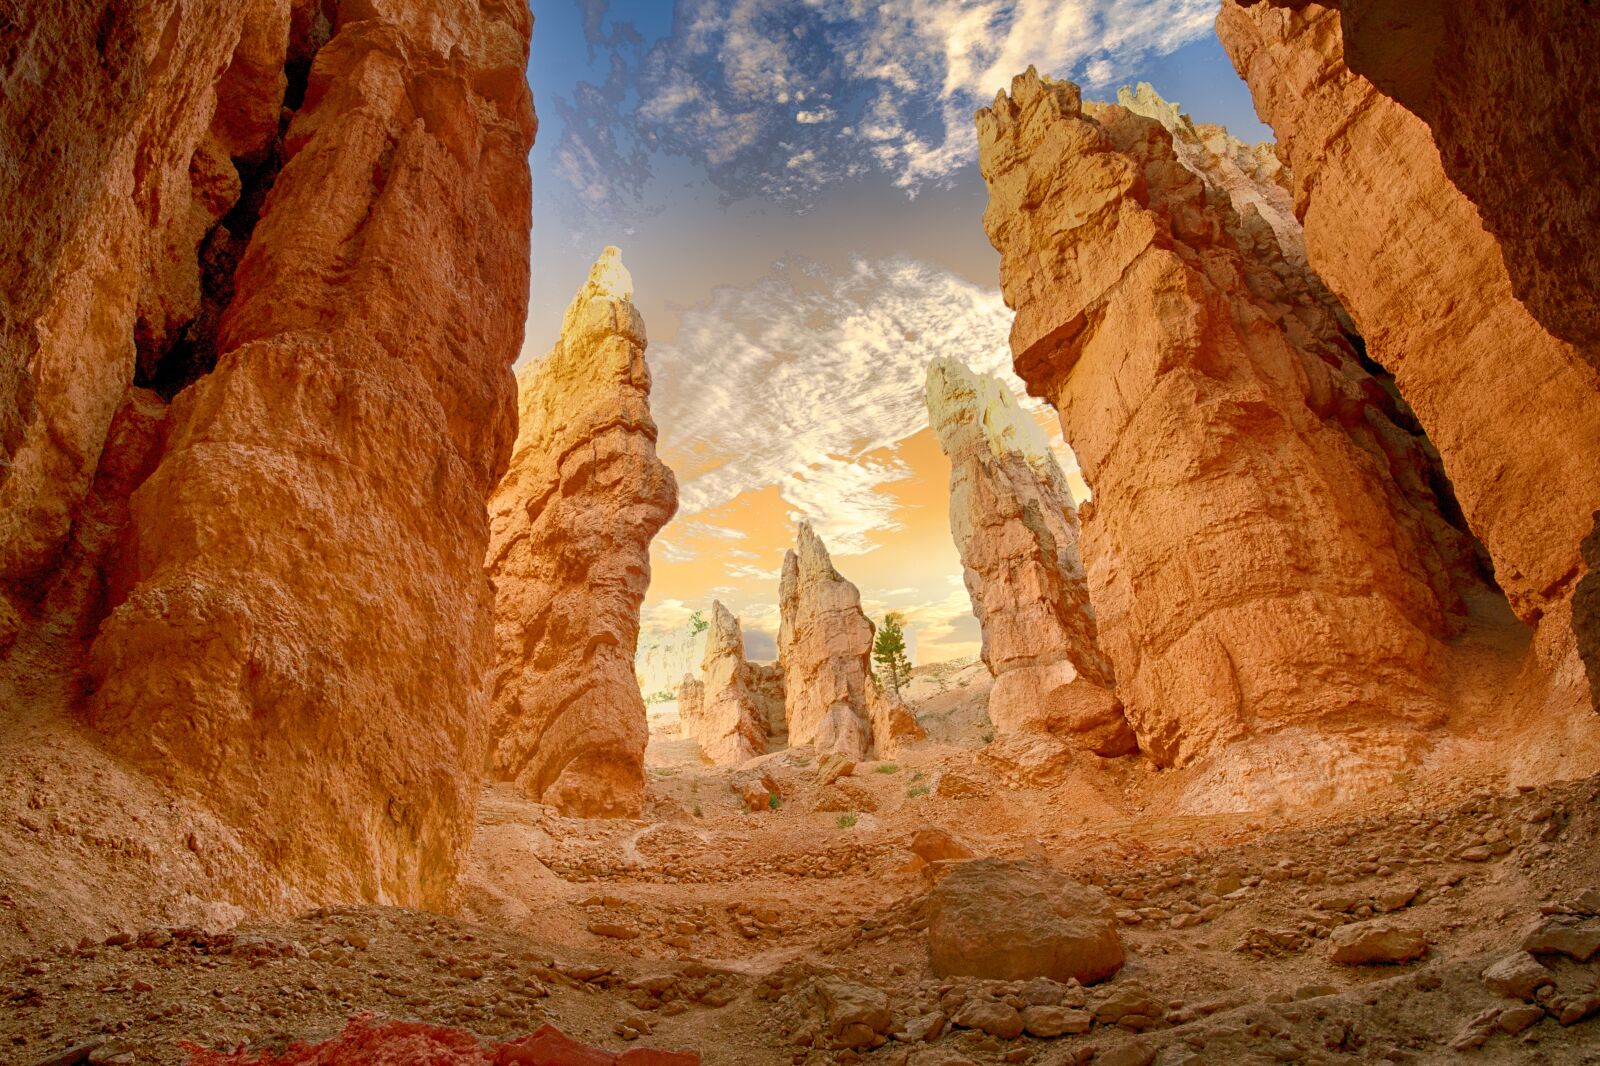 Sony Alpha DSLR-A900 sample photo. Canyon, desert, landscape photography